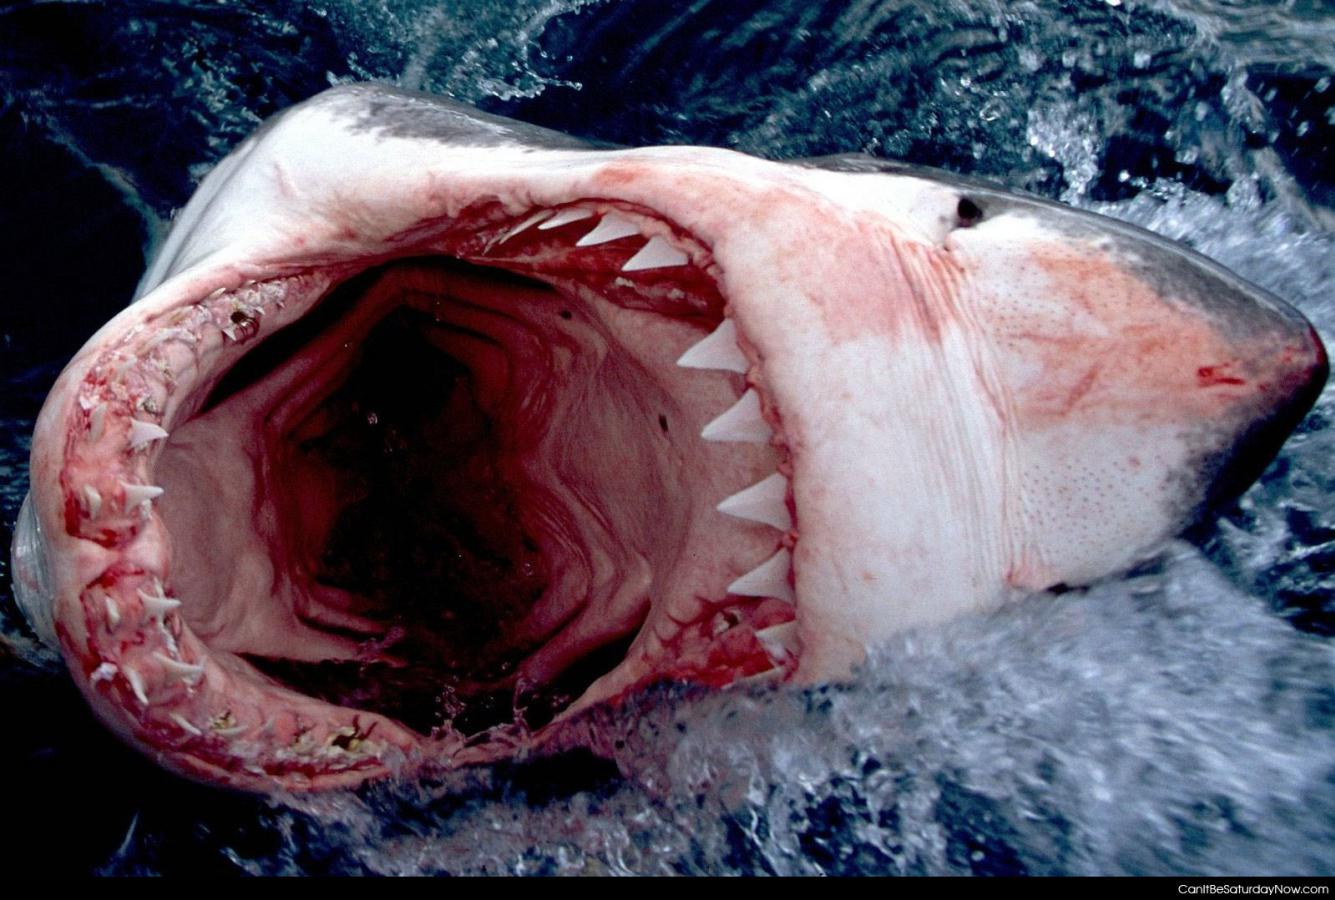 Sharke bites - this shark wants to bite